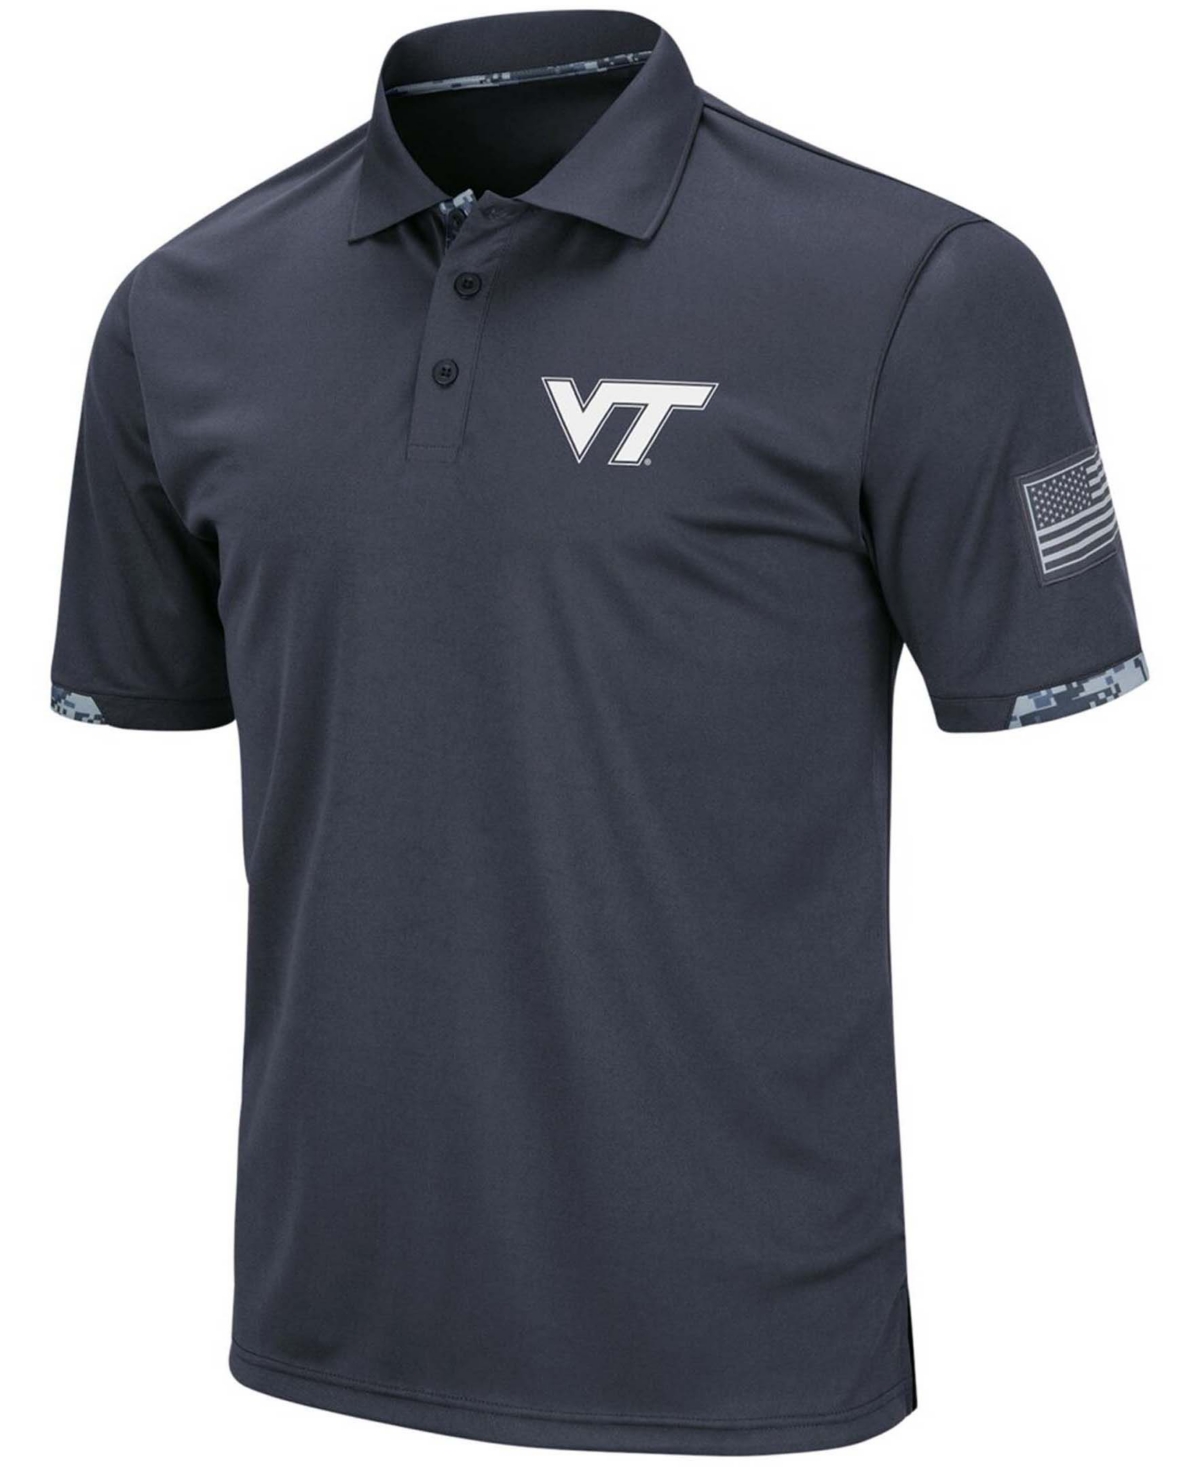 Shop Colosseum Men's Charcoal Virginia Tech Hokies Oht Military-inspired Appreciation Digital Camo Polo Shirt